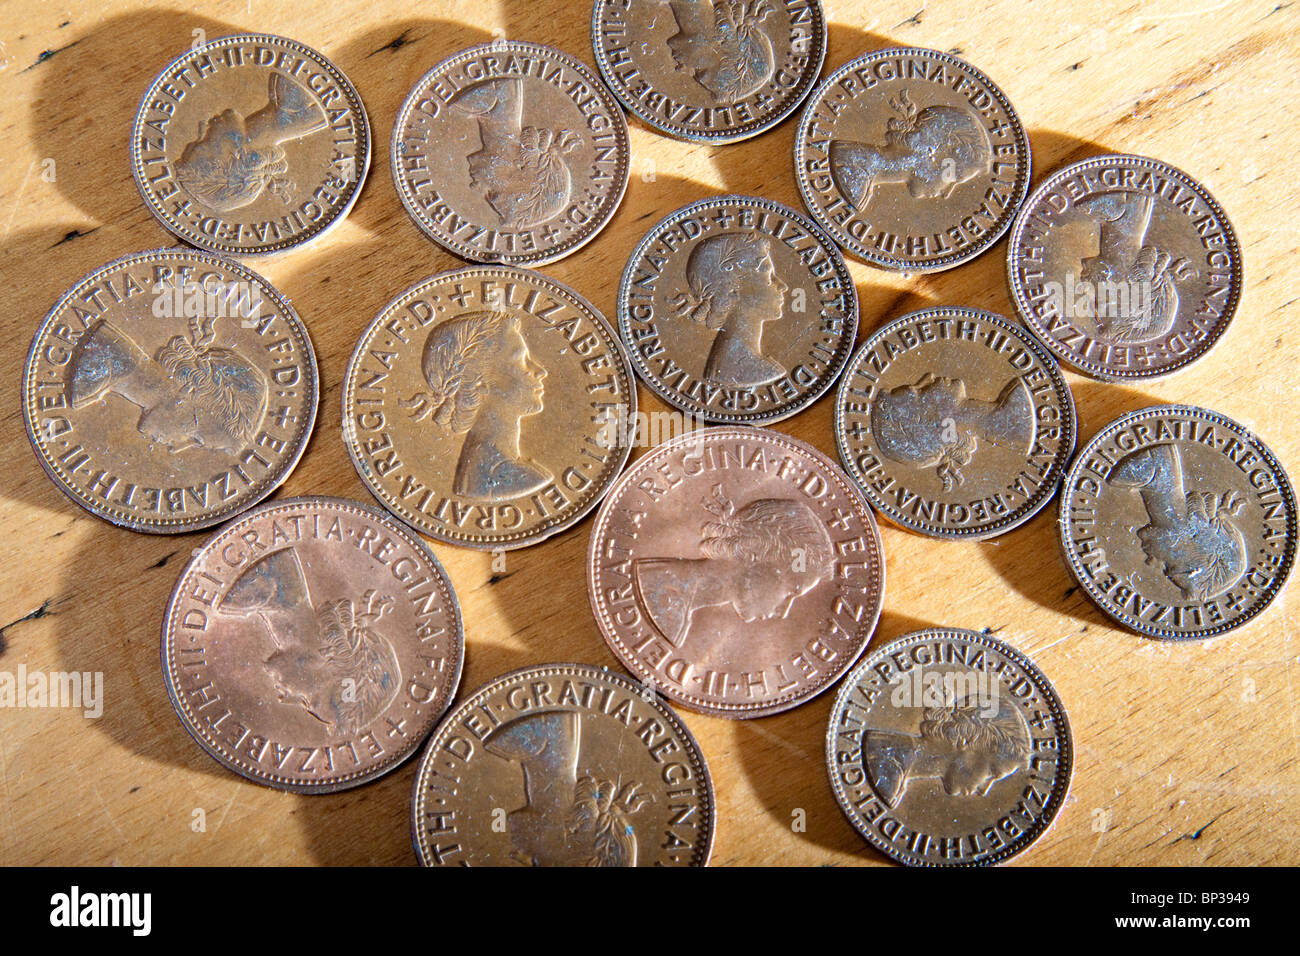 Muster der jungen Königin Elizabeth II Kupfermünzen zu stellen. Stockfoto